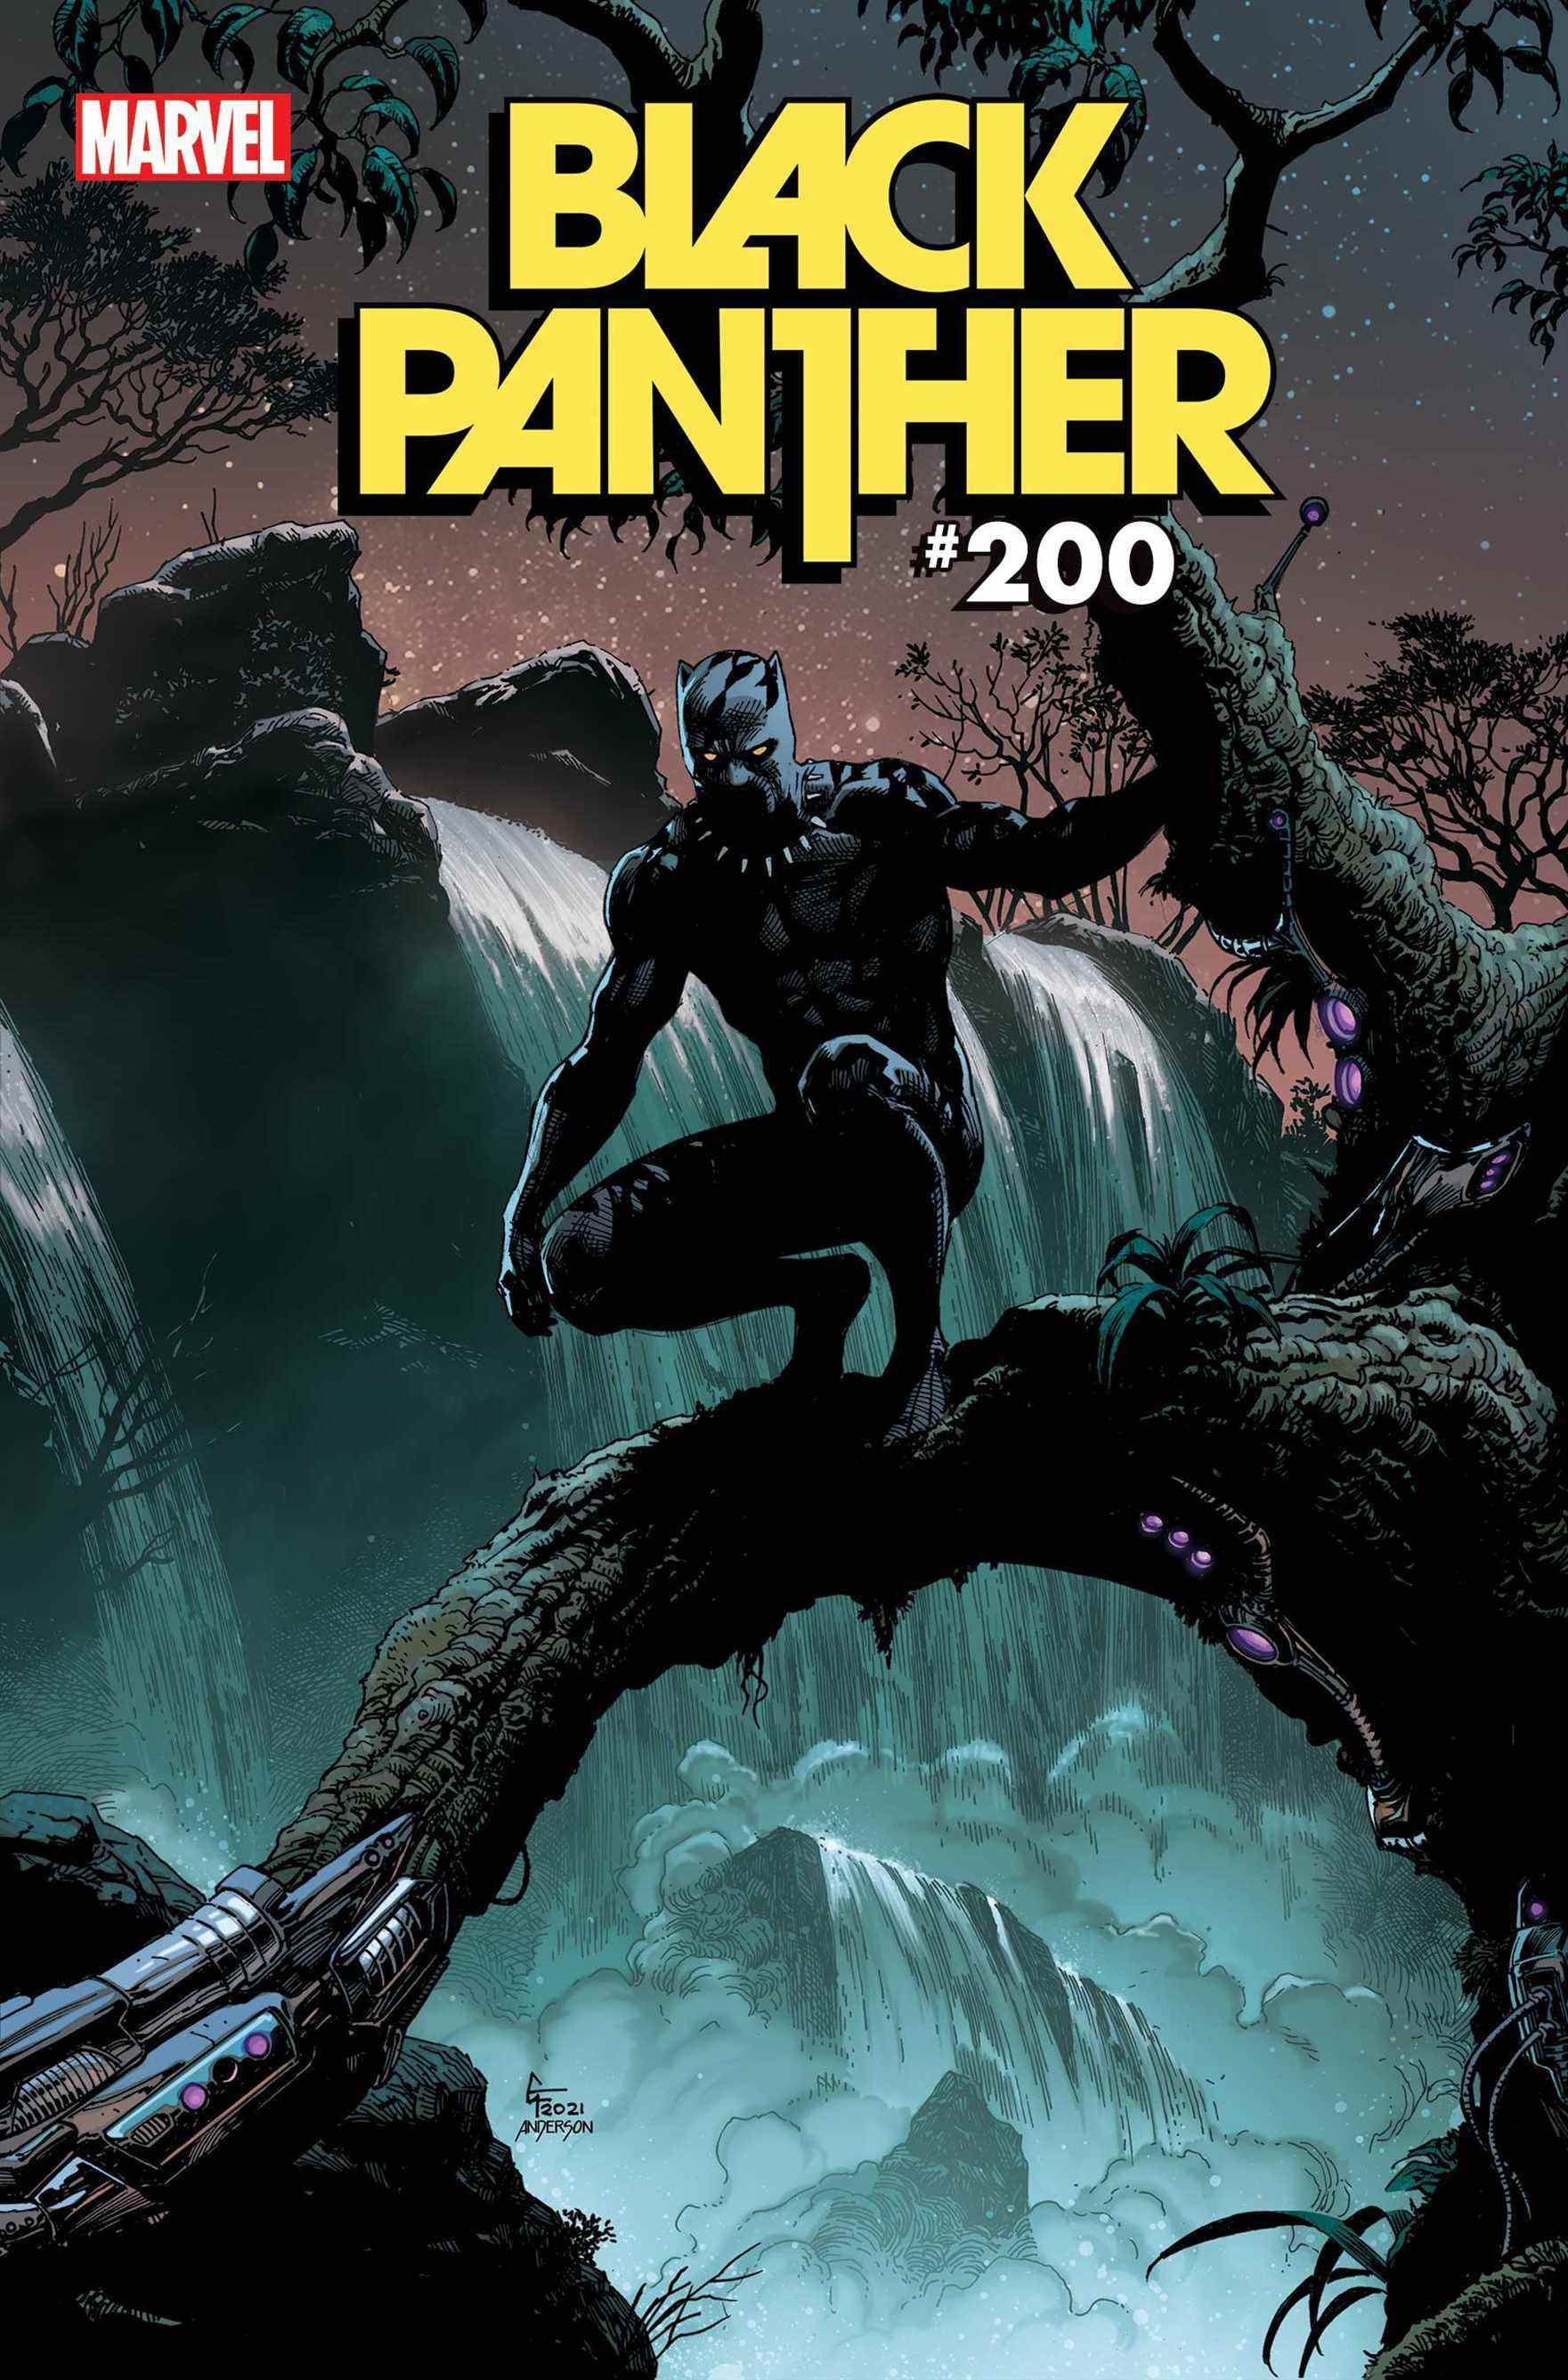 Couverture de la variante Black Panther #3